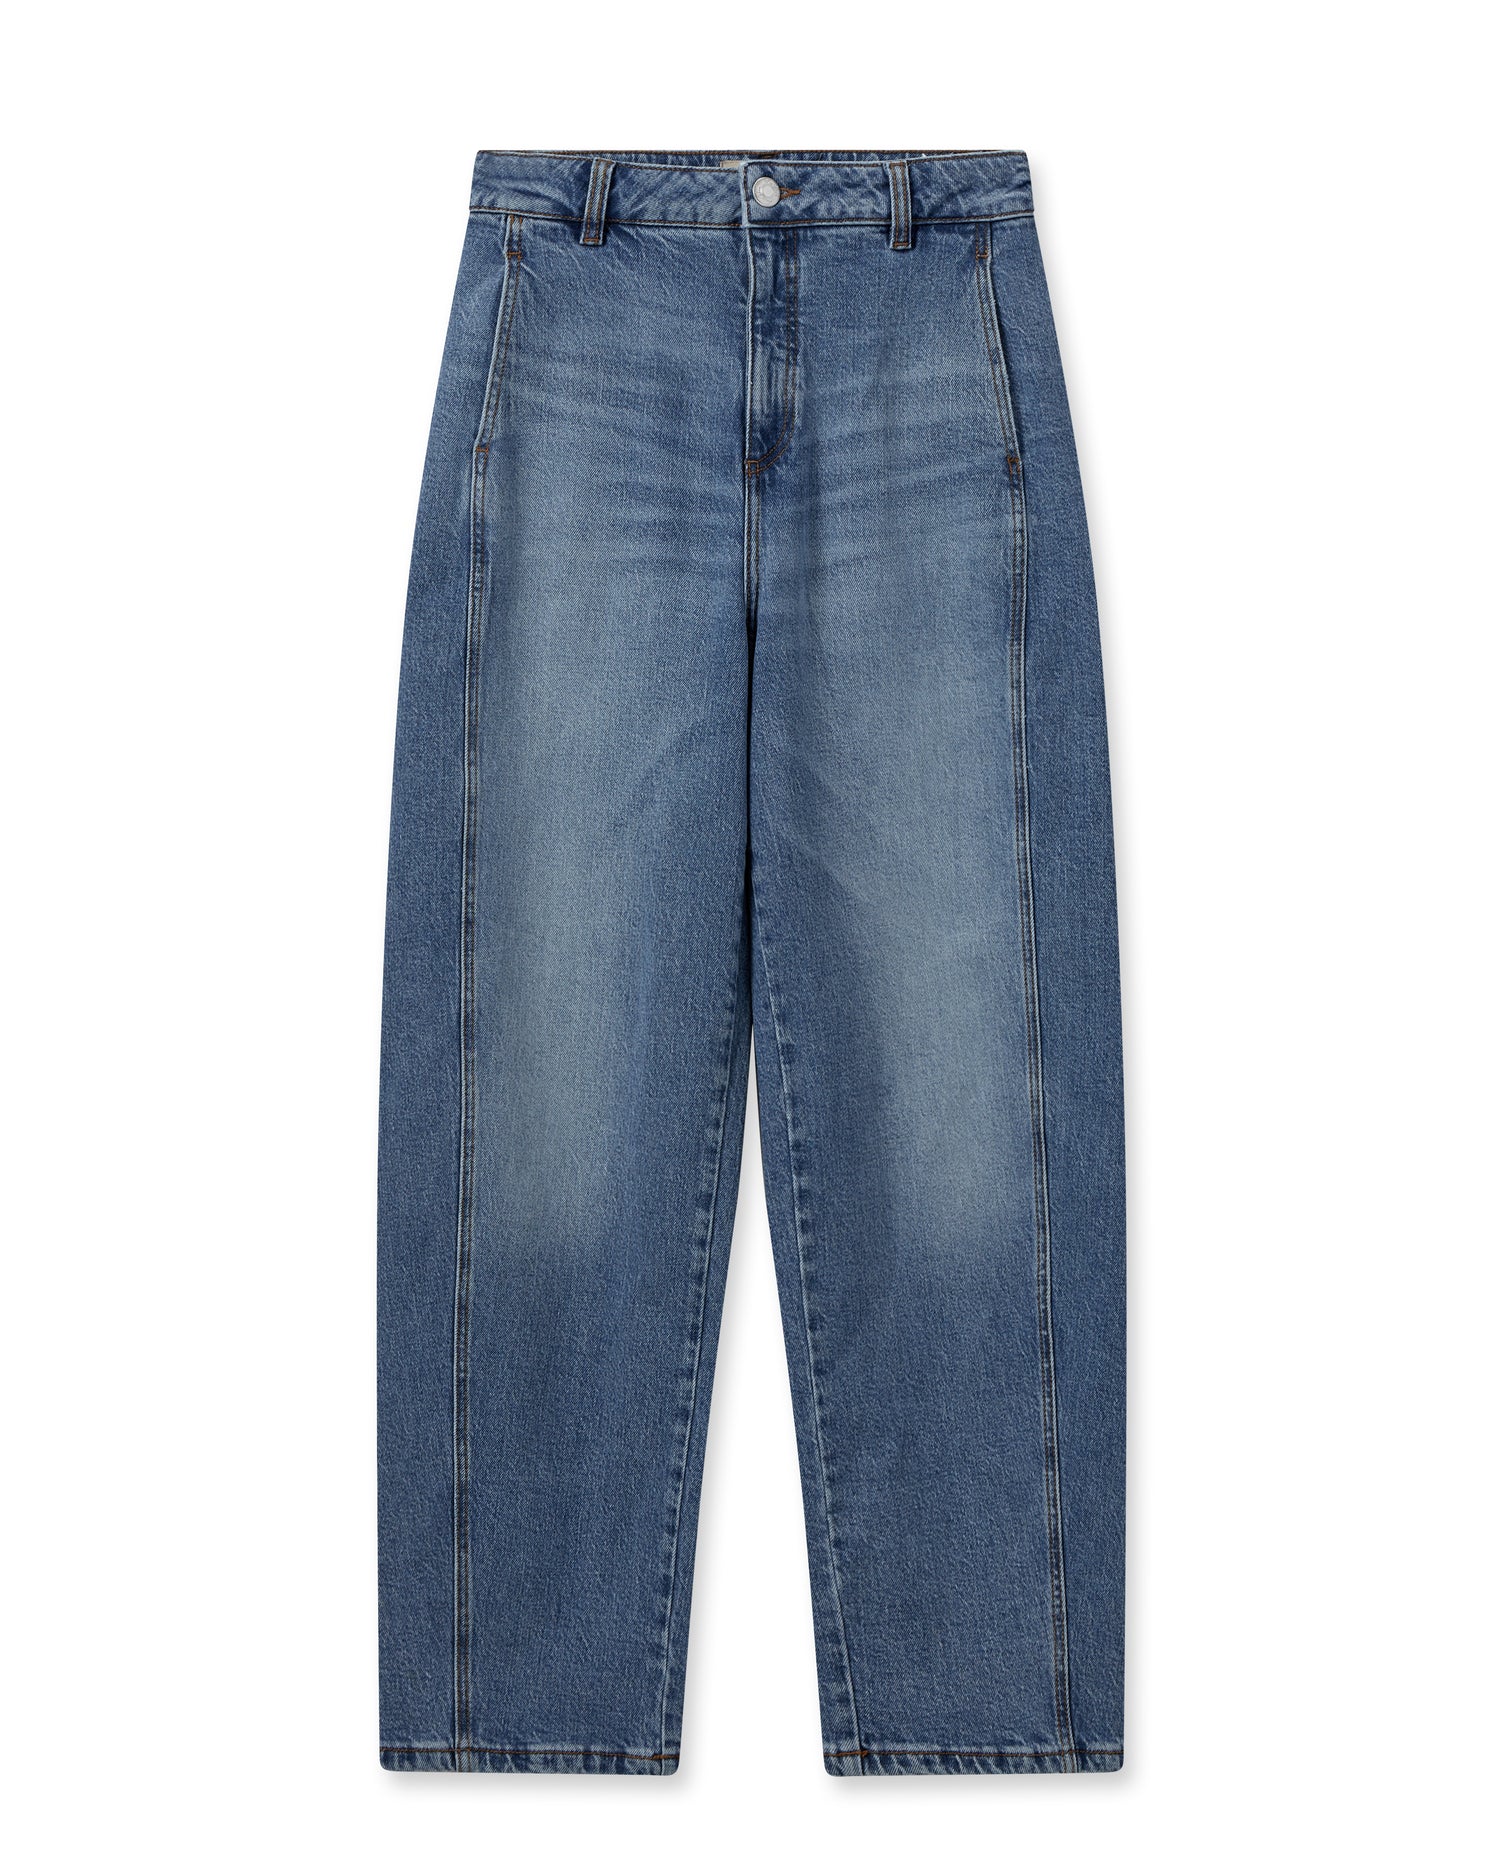 Jeans - BARREL MON JEANS - BLUE